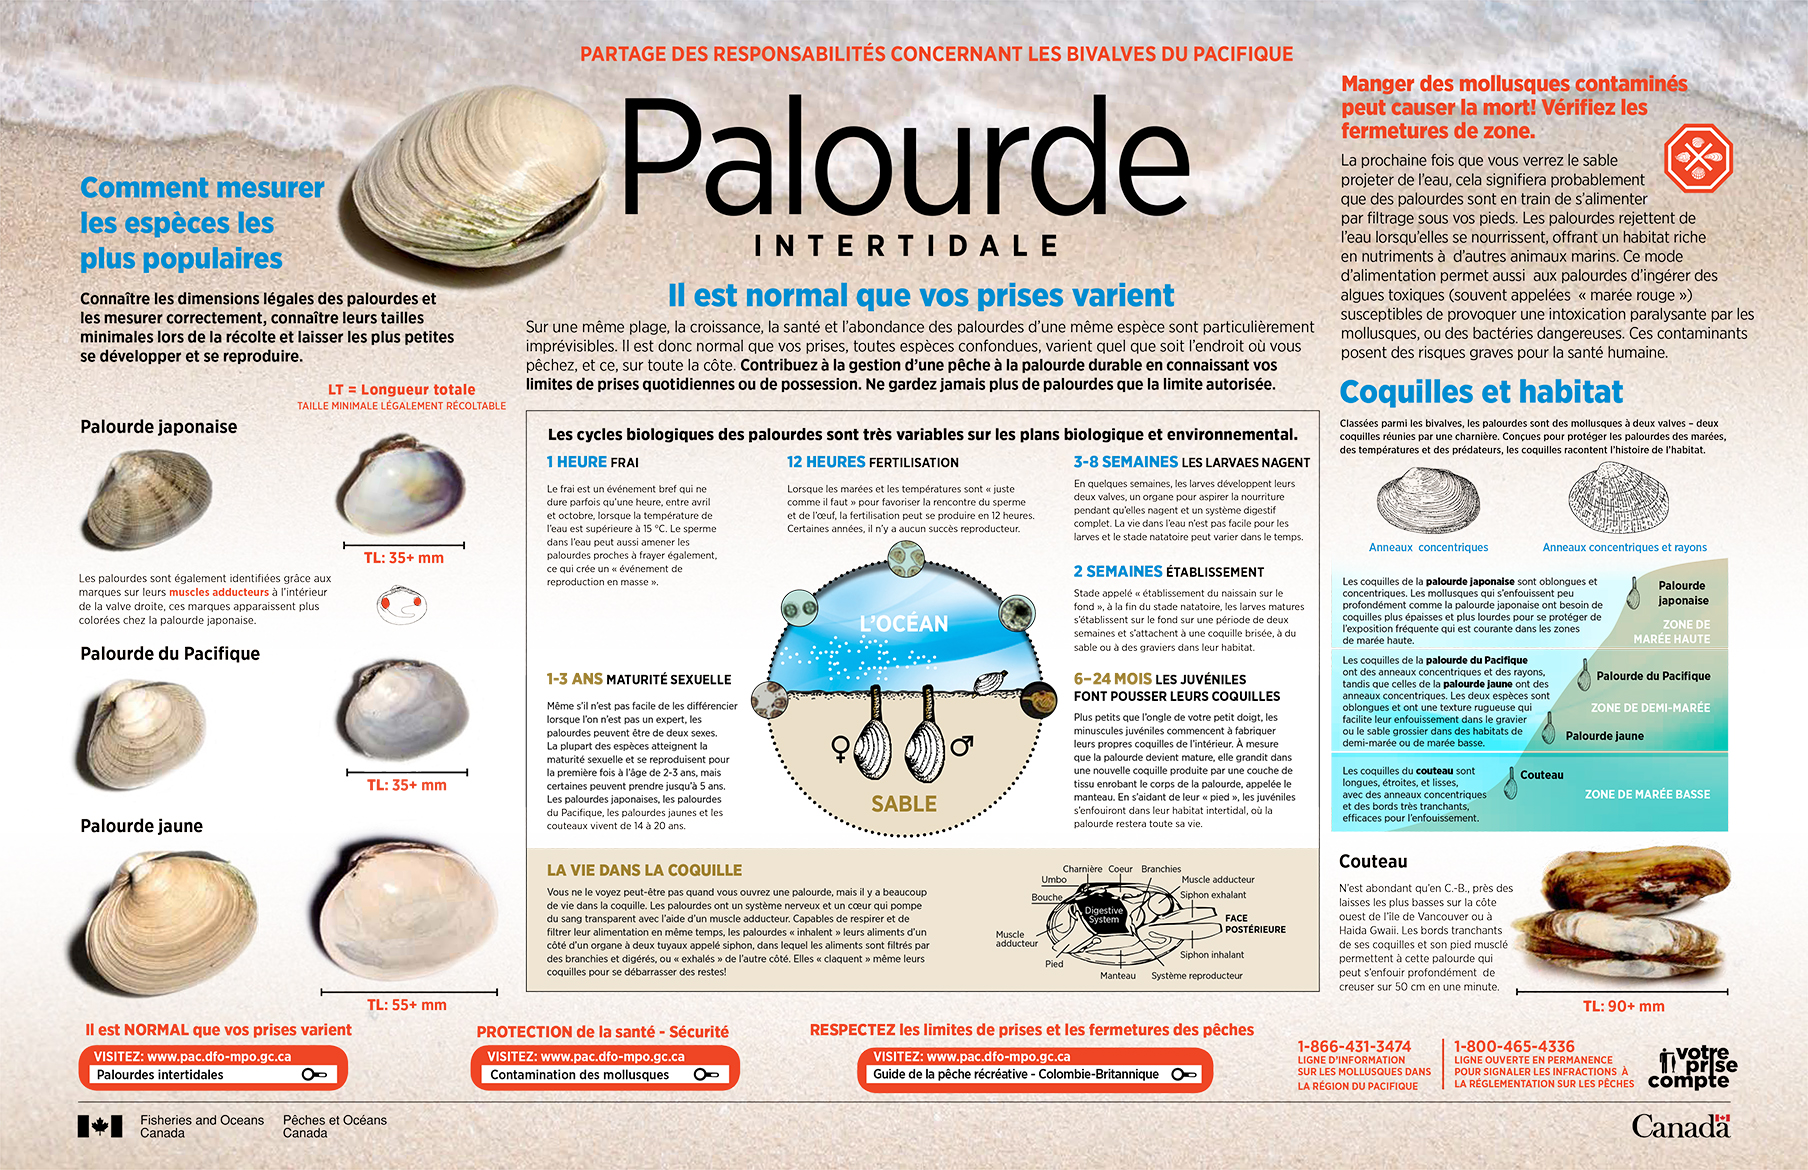 Infographie : Partage des responsabilités concernant les bivalves du pacifique - Palourde intertidale